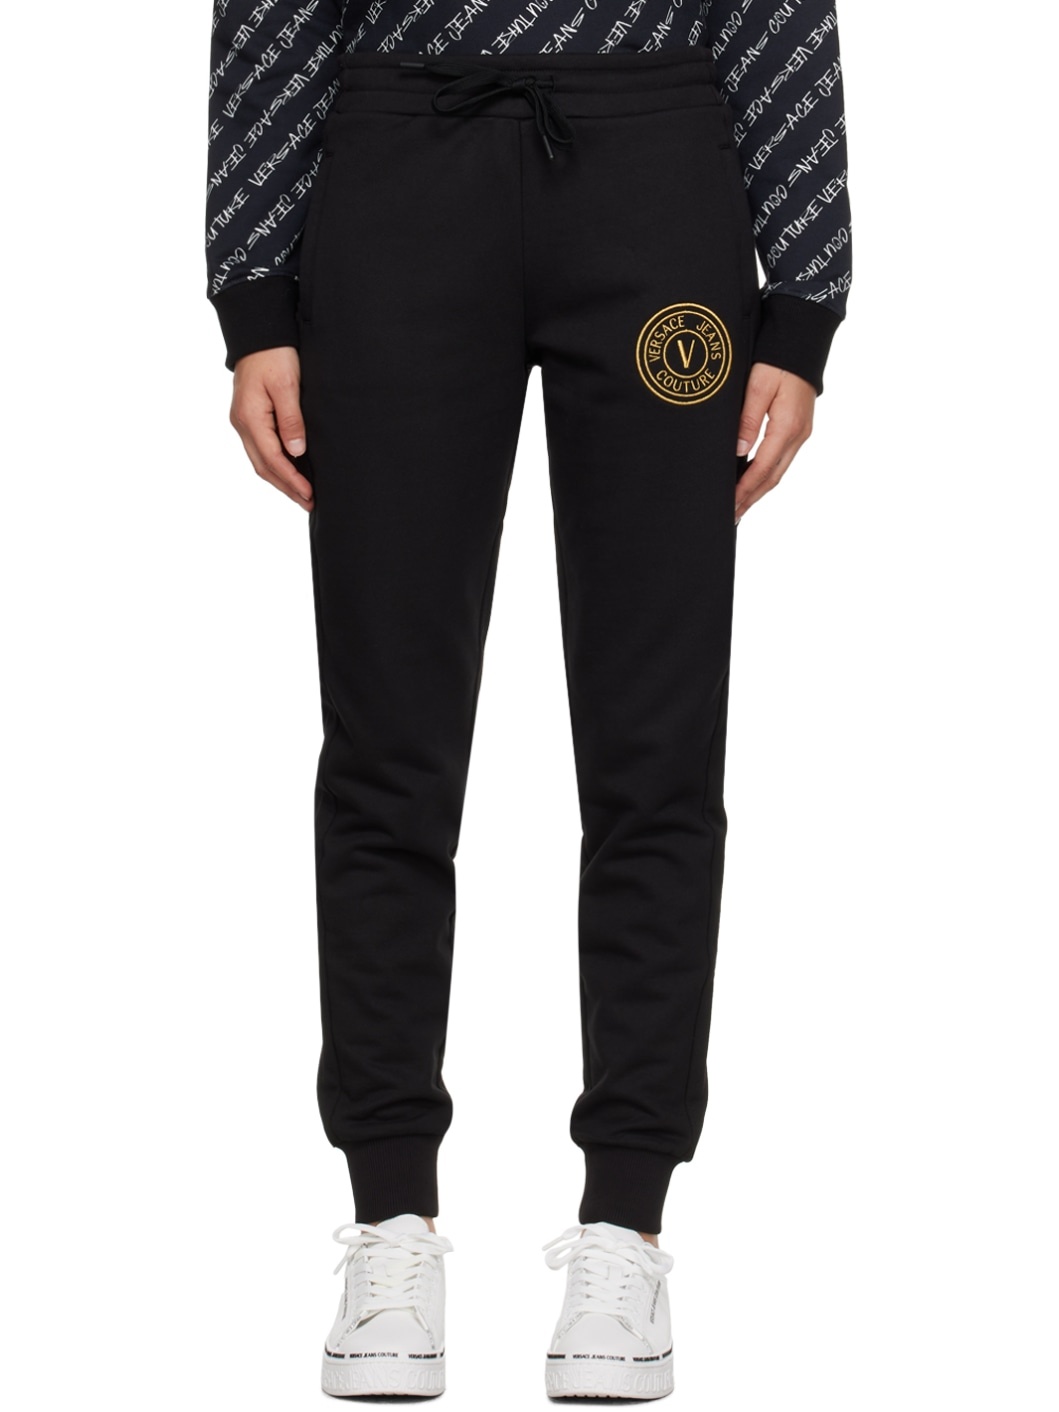 Black V-Emblem Lounge Pants - 1